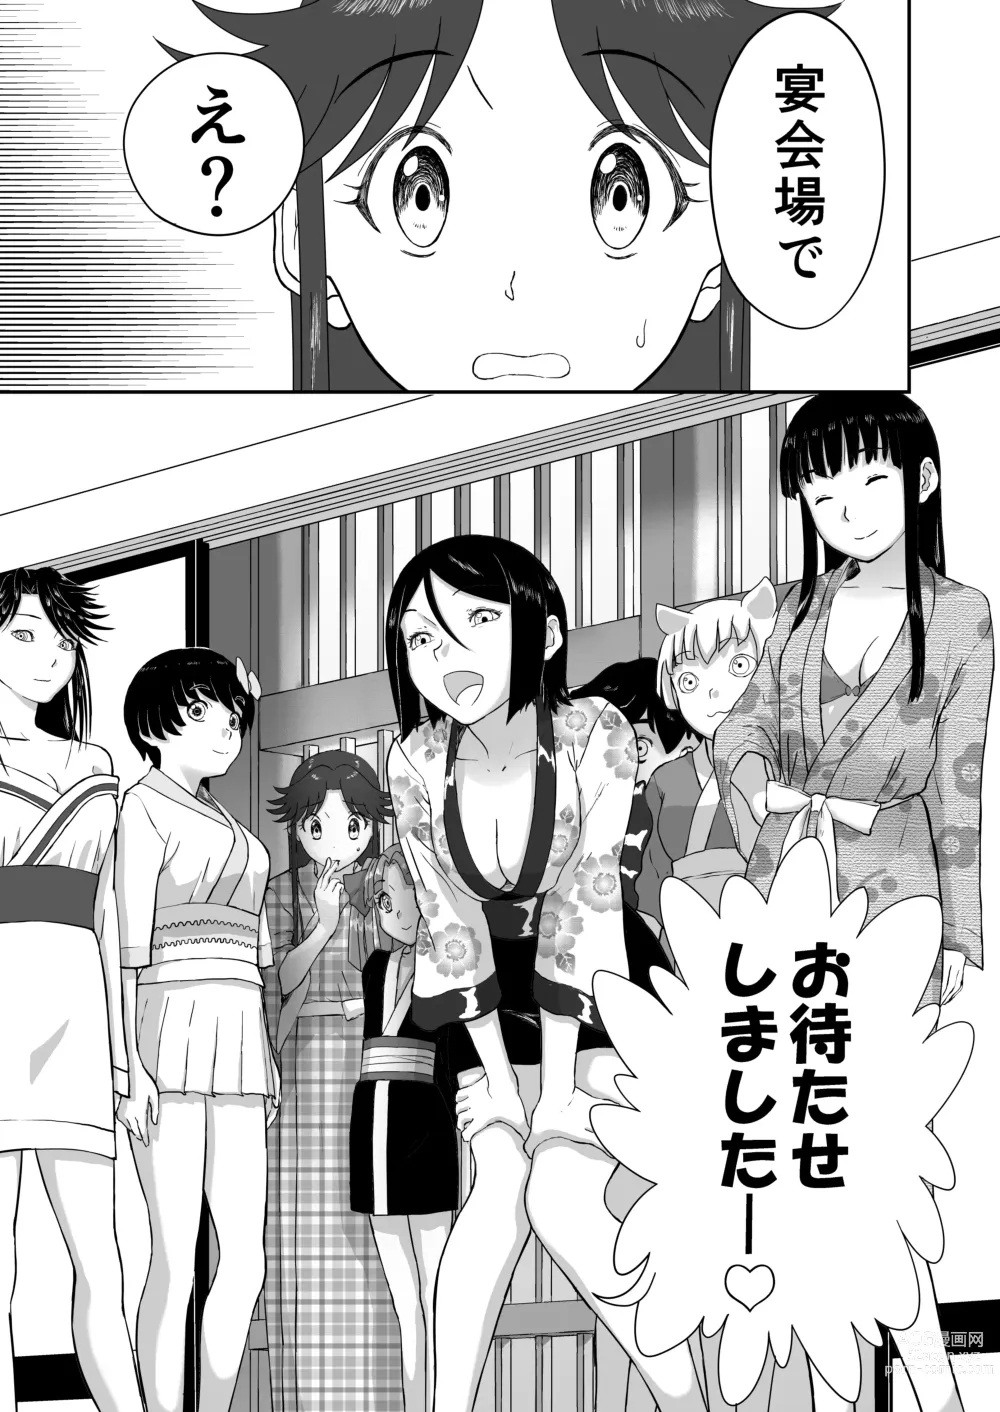 Page 17 of doujinshi Mousou Meisaku Kuradashi Gekijou Sono 6 Nankite Roku